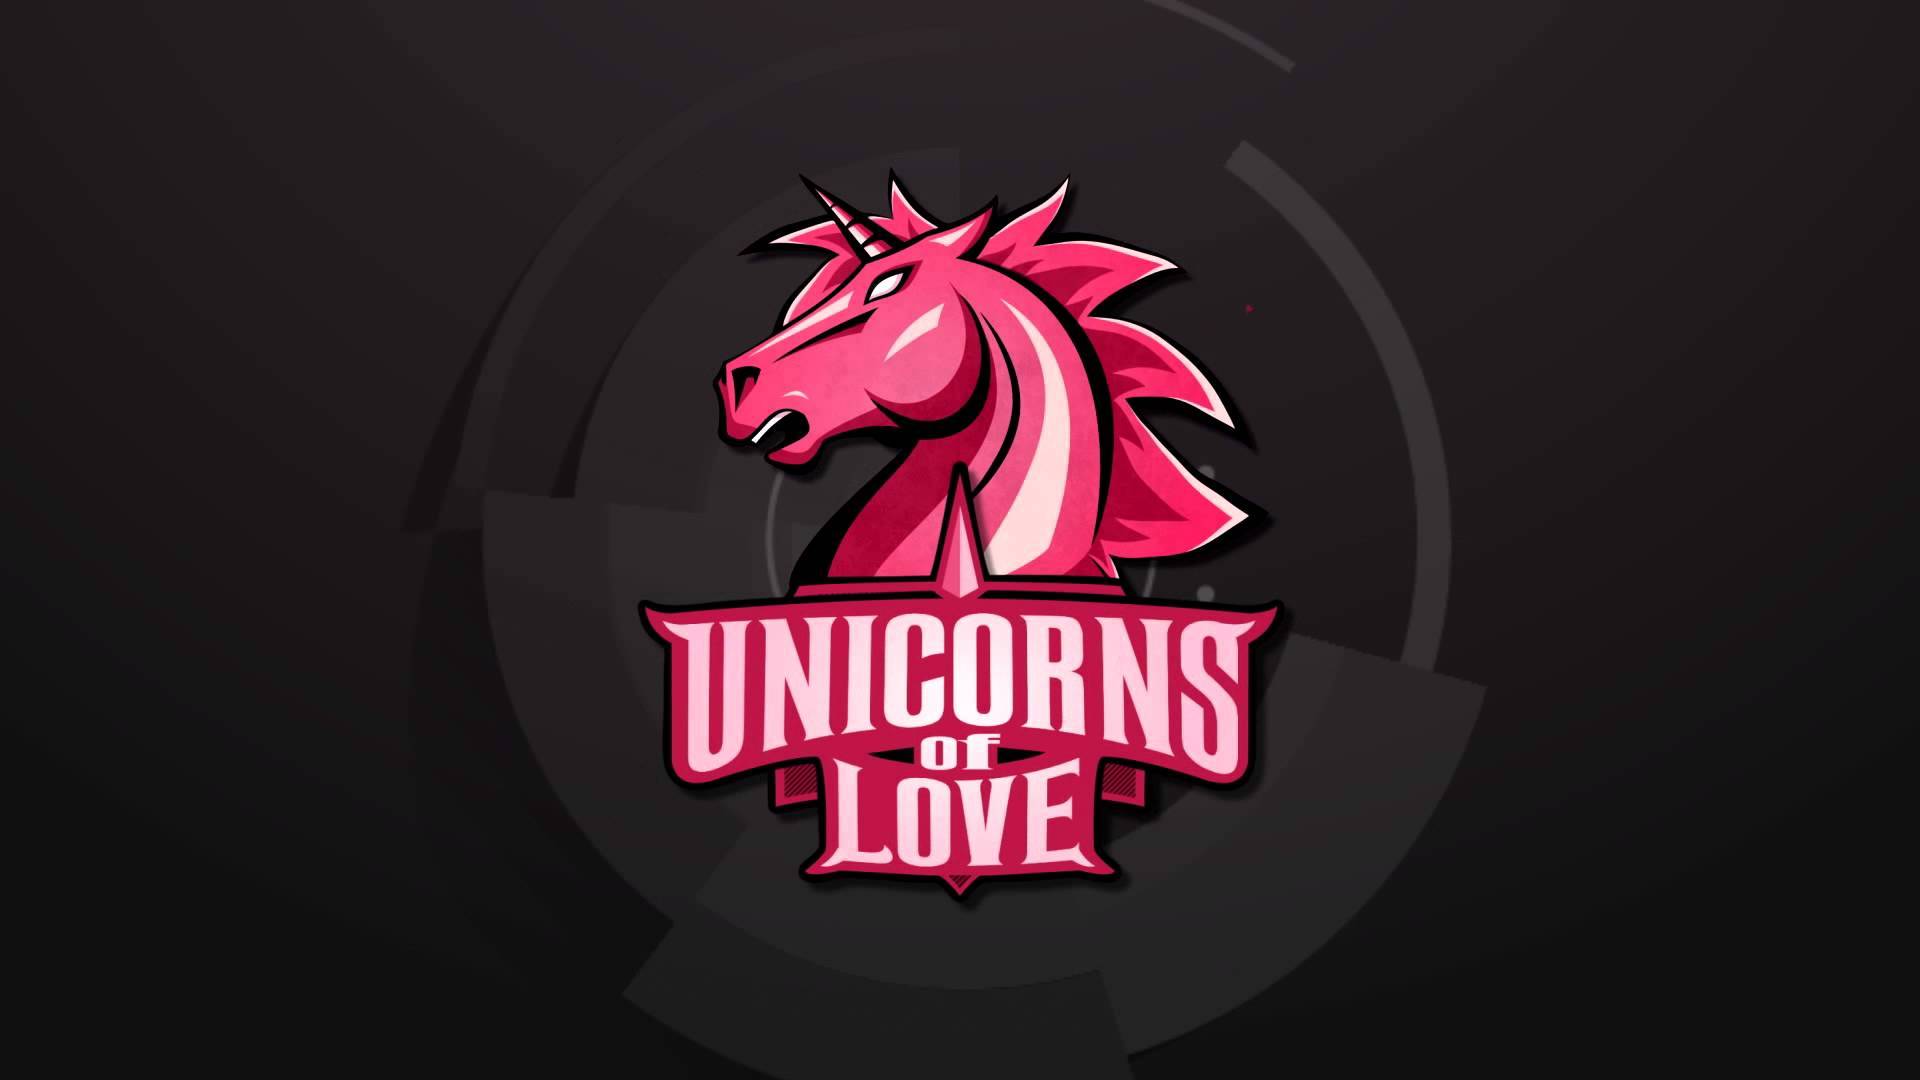 unicorns of love worlds 2021